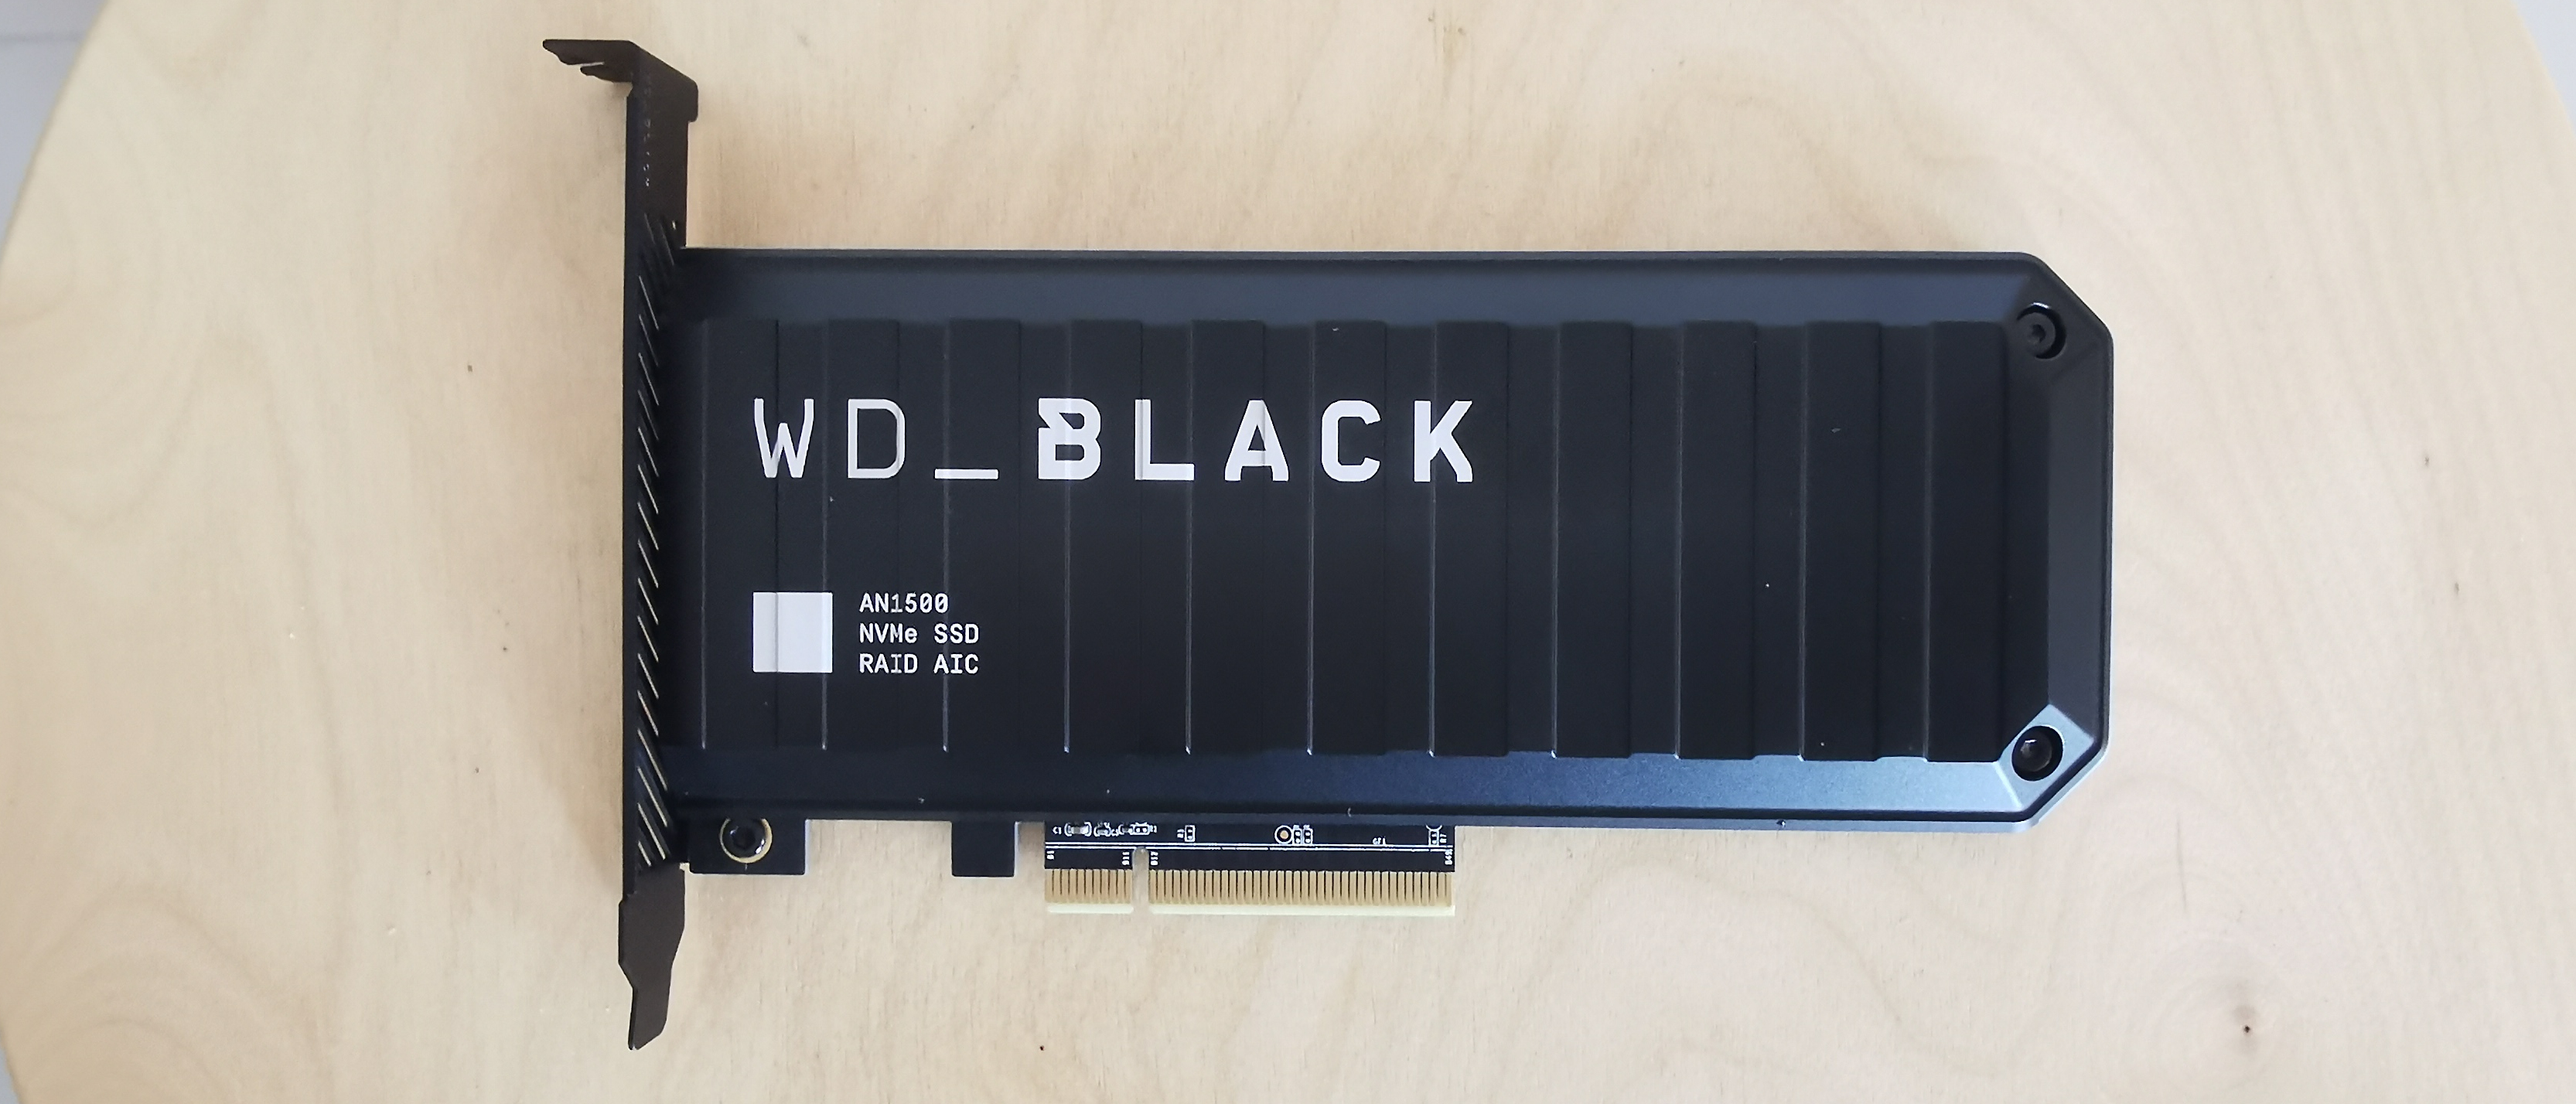 Wd Black An1500 Ssd Review Techradar